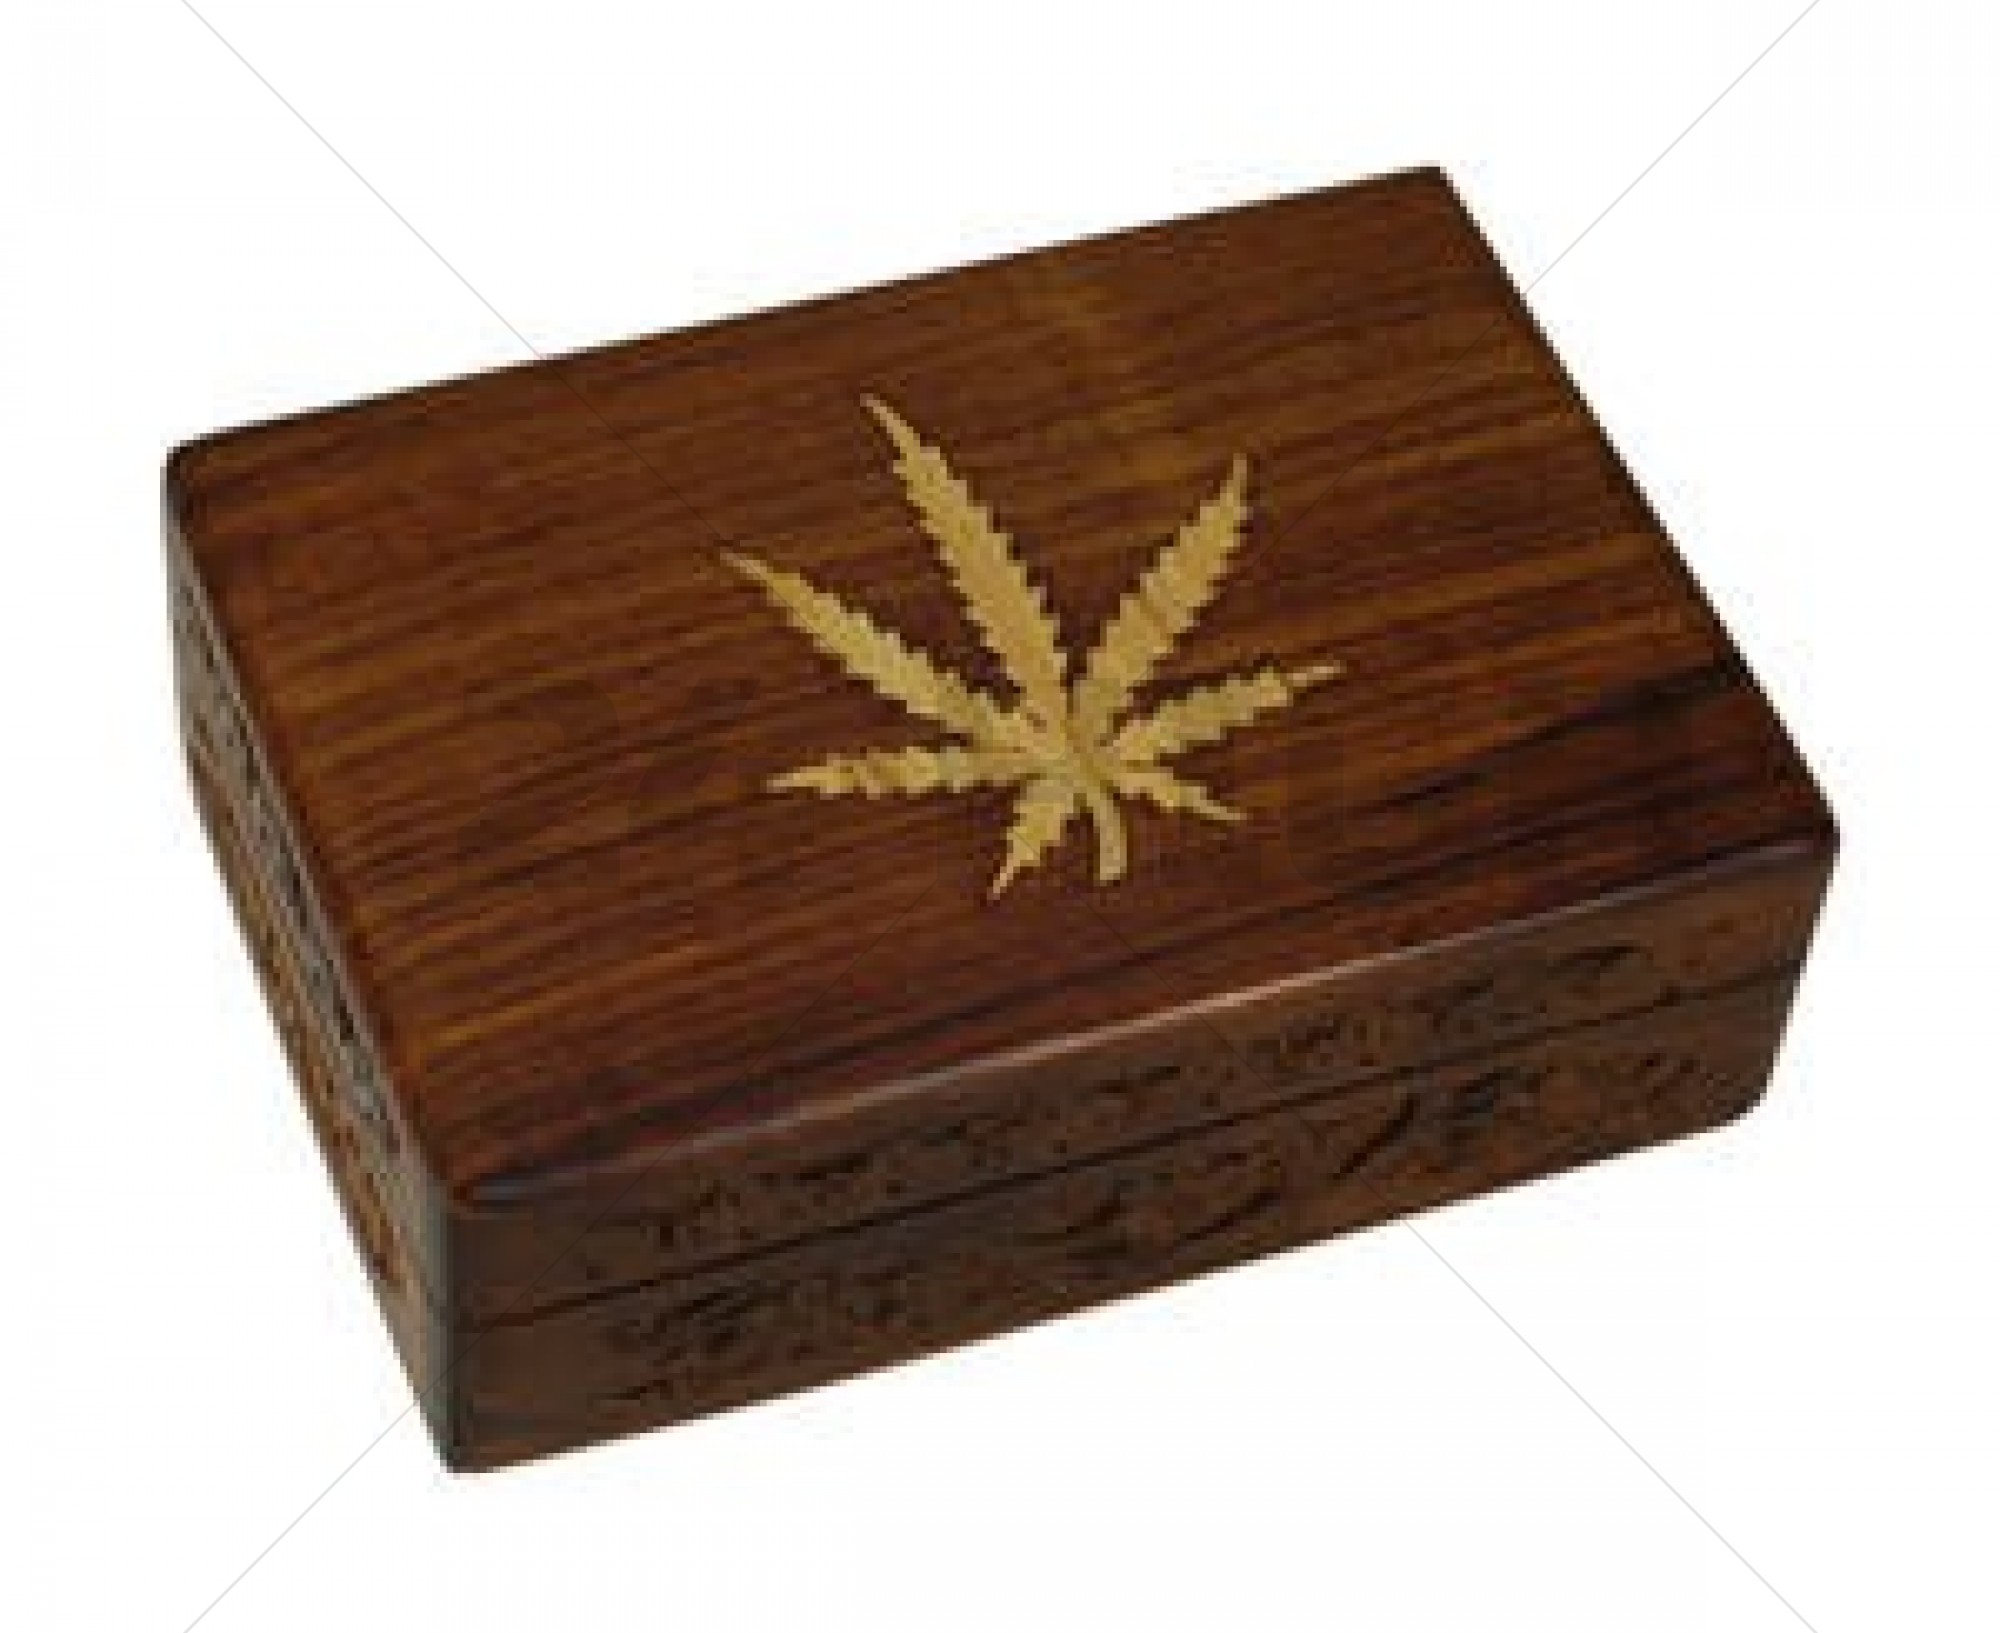 Wood Box With Leaf (19 x 14 x 6 cm)